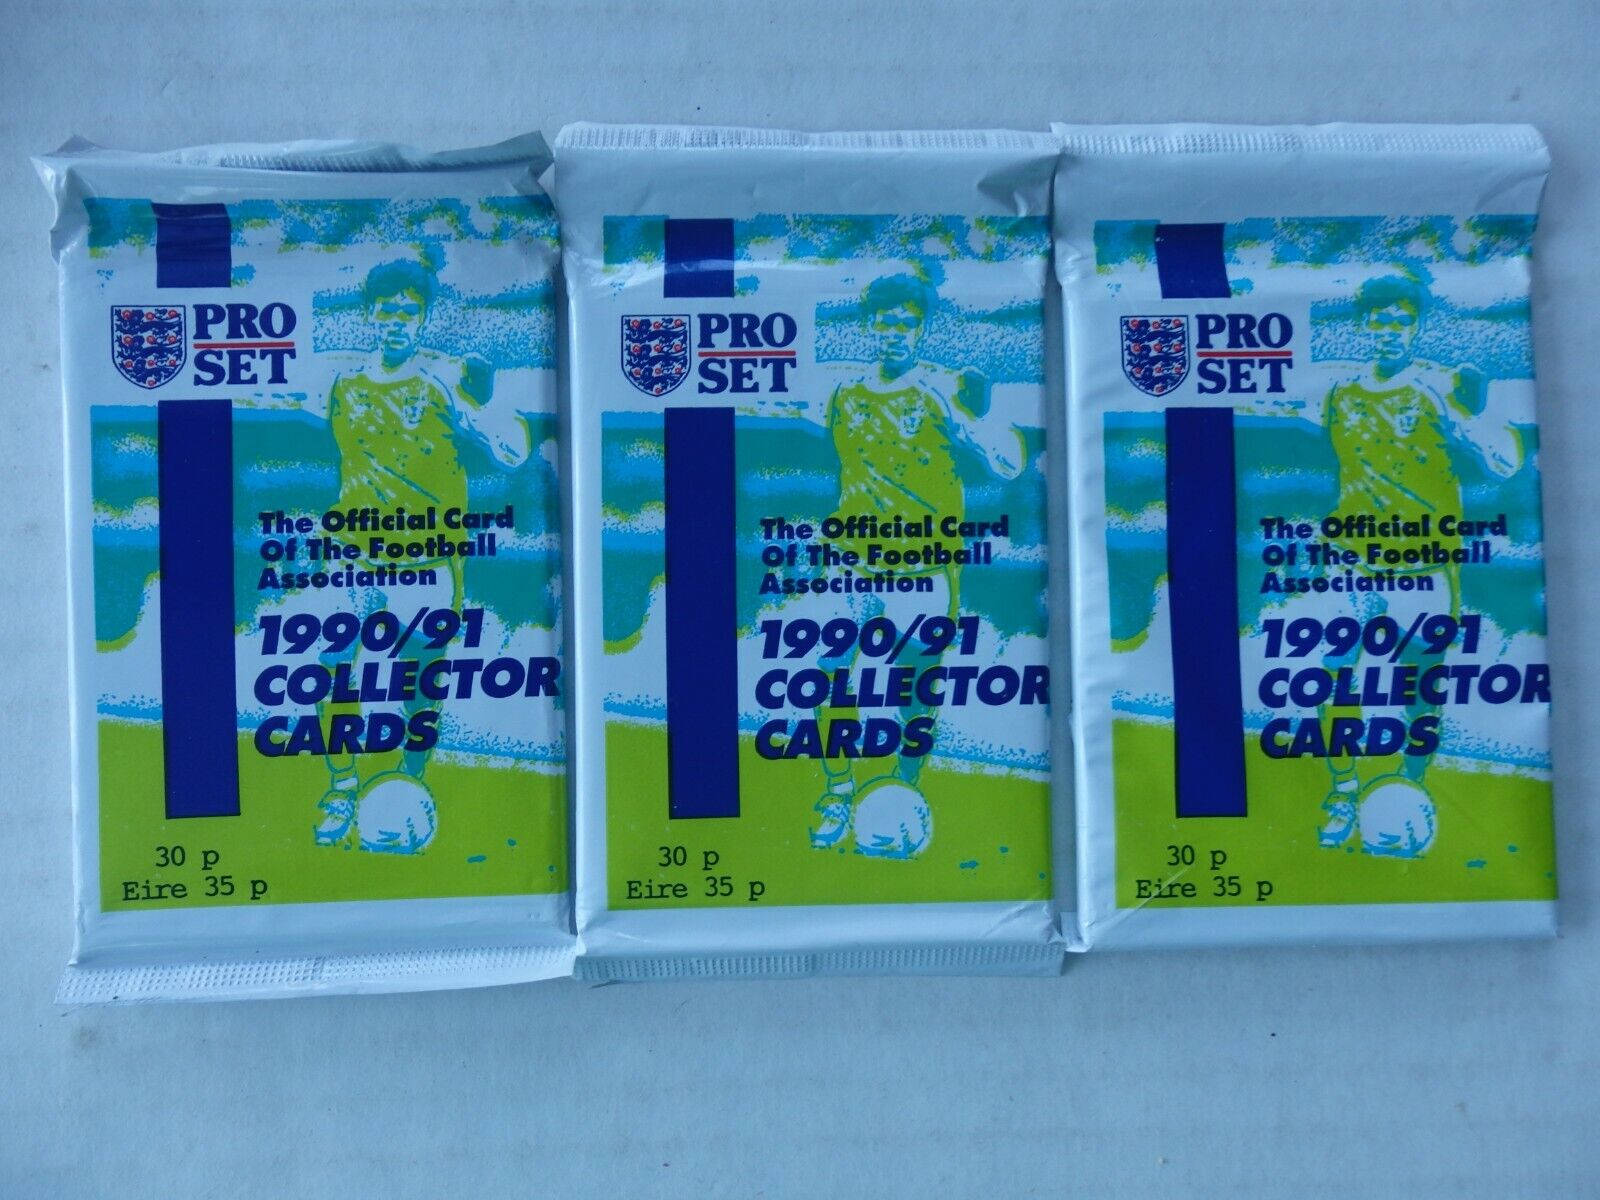 3 Sealed Packs Pro Set 1990/91 Collector Cards Football (Soccer) Association UK